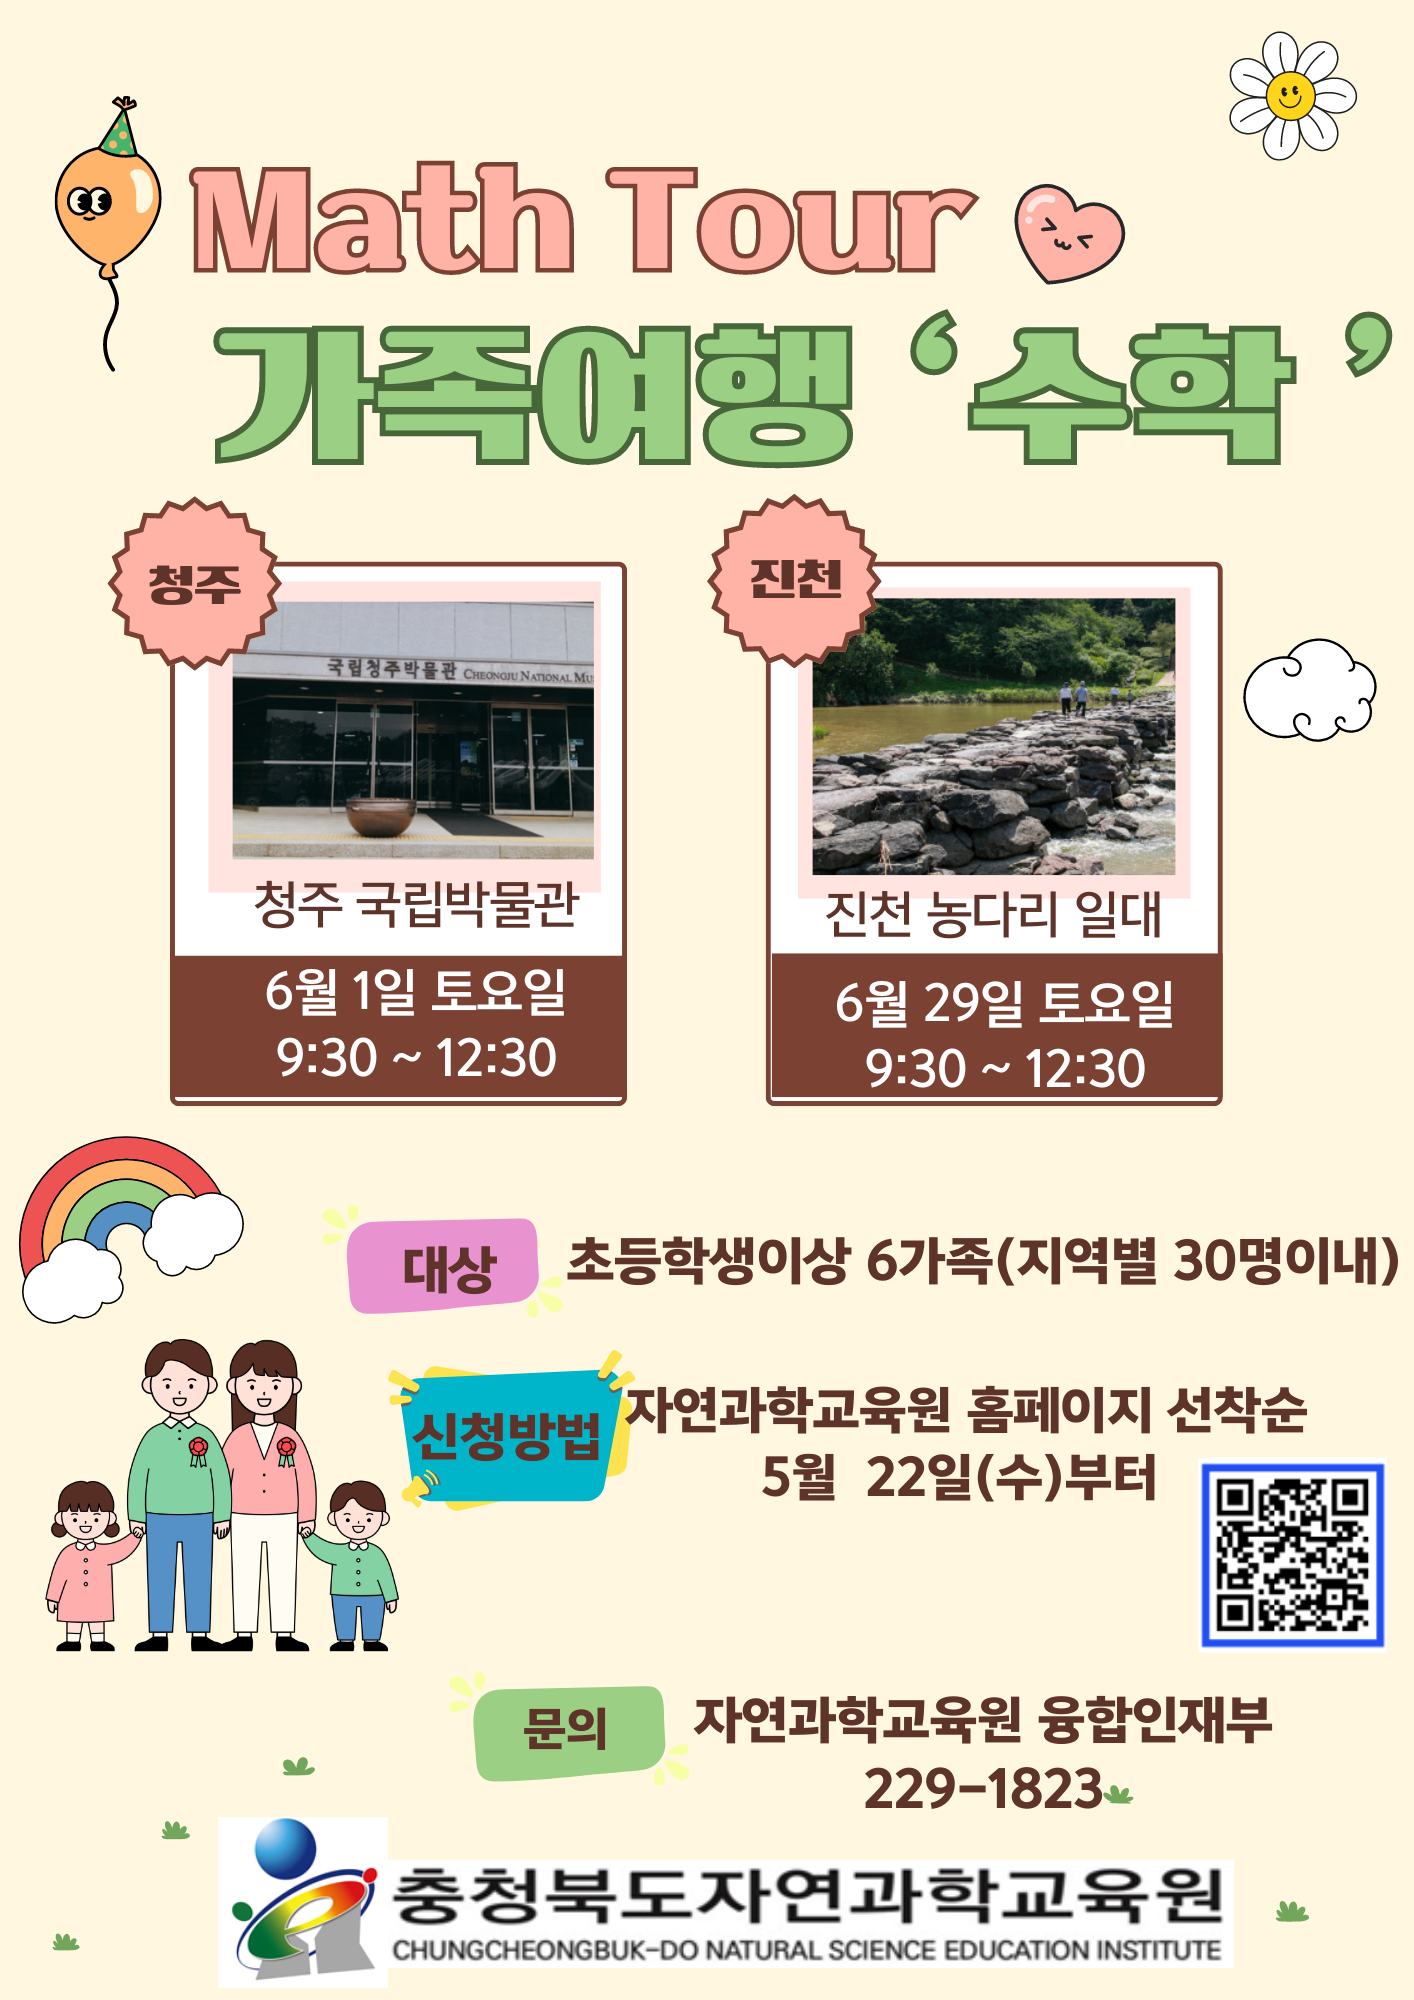 충청북도자연과학교육원 융합인재부_가족여행 '수학' 웹자보